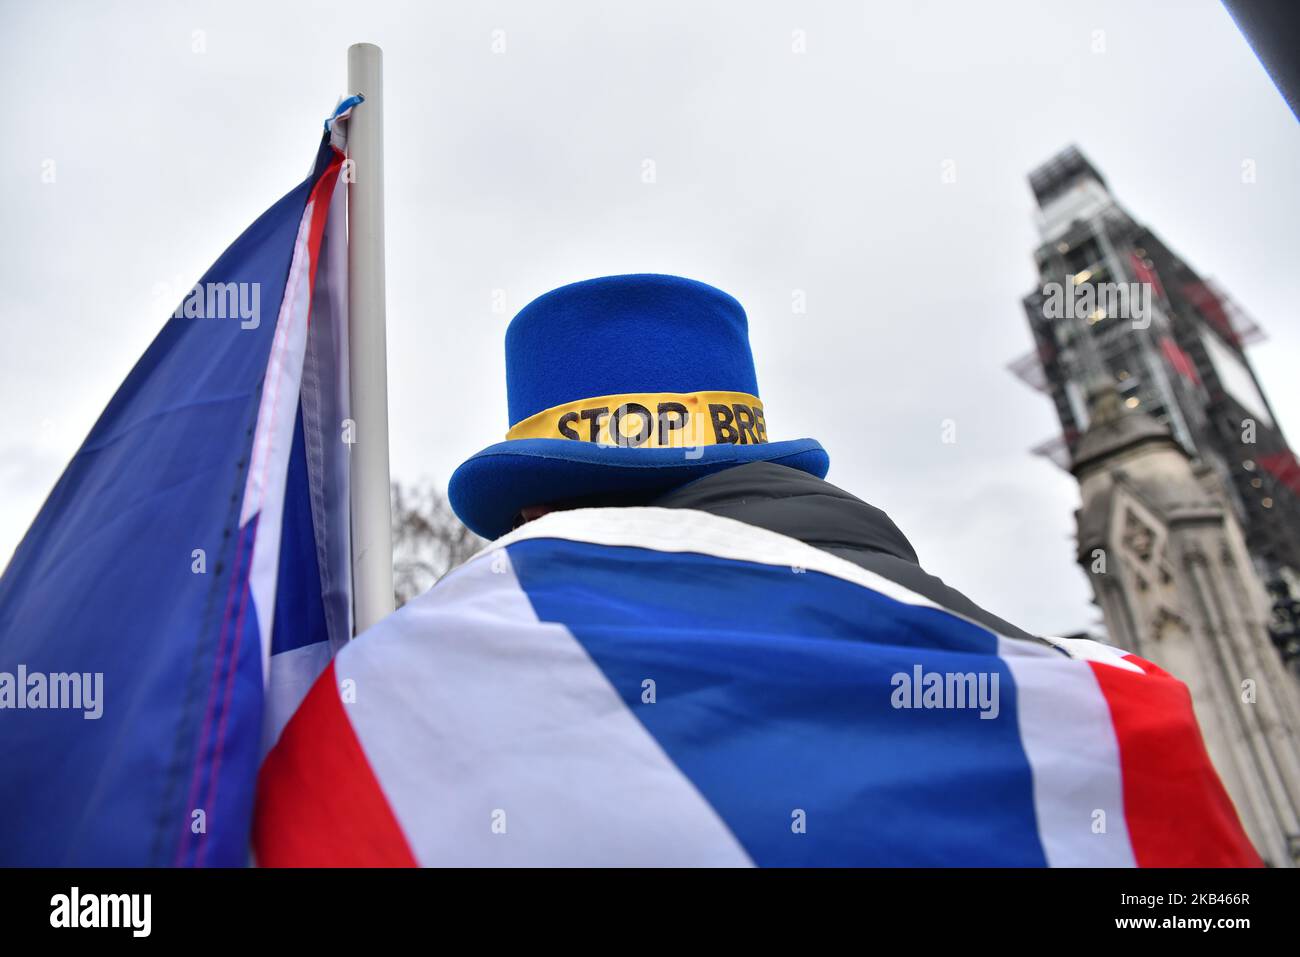 Der Anti-Brexit-Kämpfer Steven Bray hält am 18. Dezember 2018 vor den Toren des Londoner Houses of Parliament eine EU-Flagge und ein Plakat, als er gegen den Brexit demonstriert. Das Kabinett wird einen No-Deal-Brexit-Plan in Betracht ziehen während der Sitzung hat Frau May nach einer Woche Debatte die Abstimmung im Parlament in der Woche vom 14. Januar vorgeschlagen. (Foto von Alberto Pezzali/NurPhoto) Stockfoto